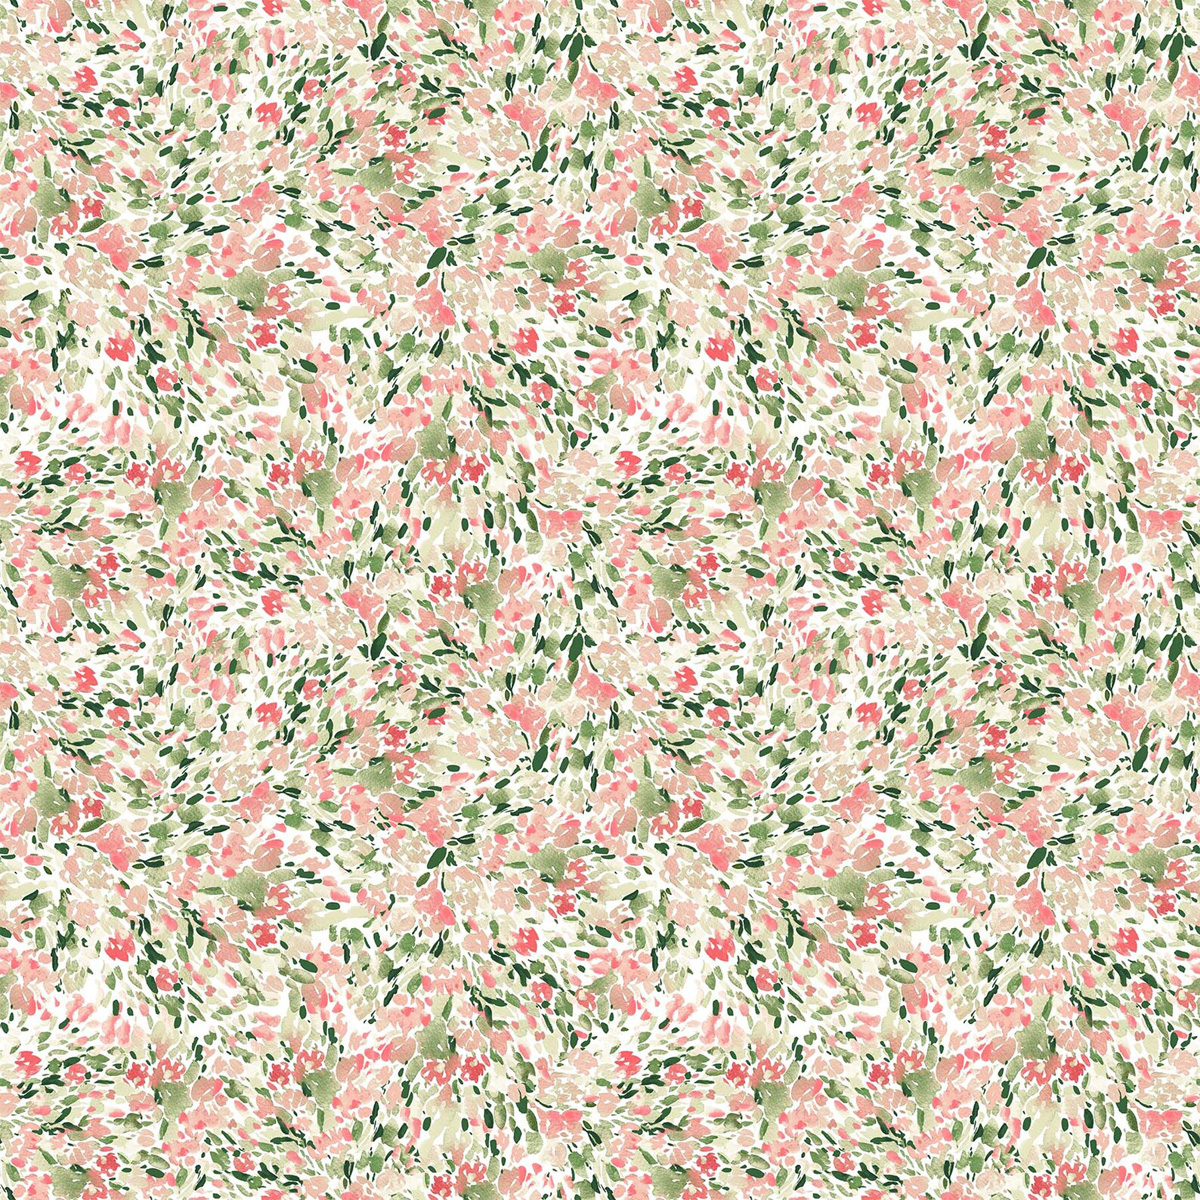 FIGO Fabrics Refresh Mint Petals